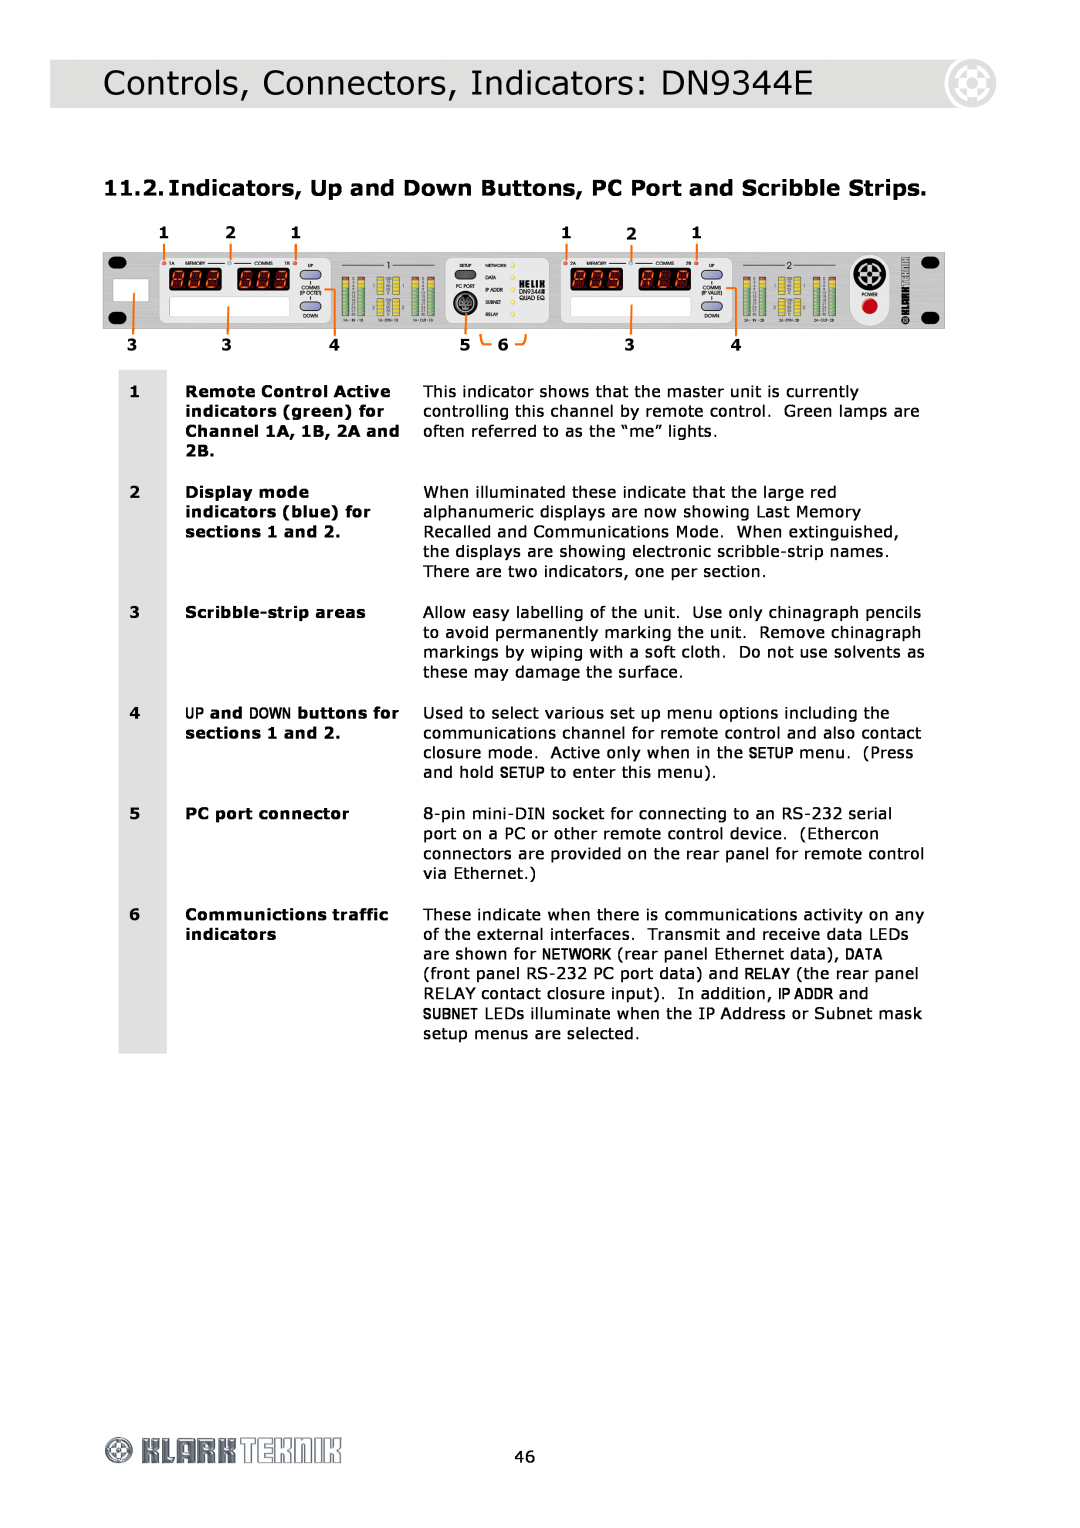 Klark Teknik DN9340E Controls, Connectors, Indicators DN9344E, 2Display mode indicators blue for sections 1 and 